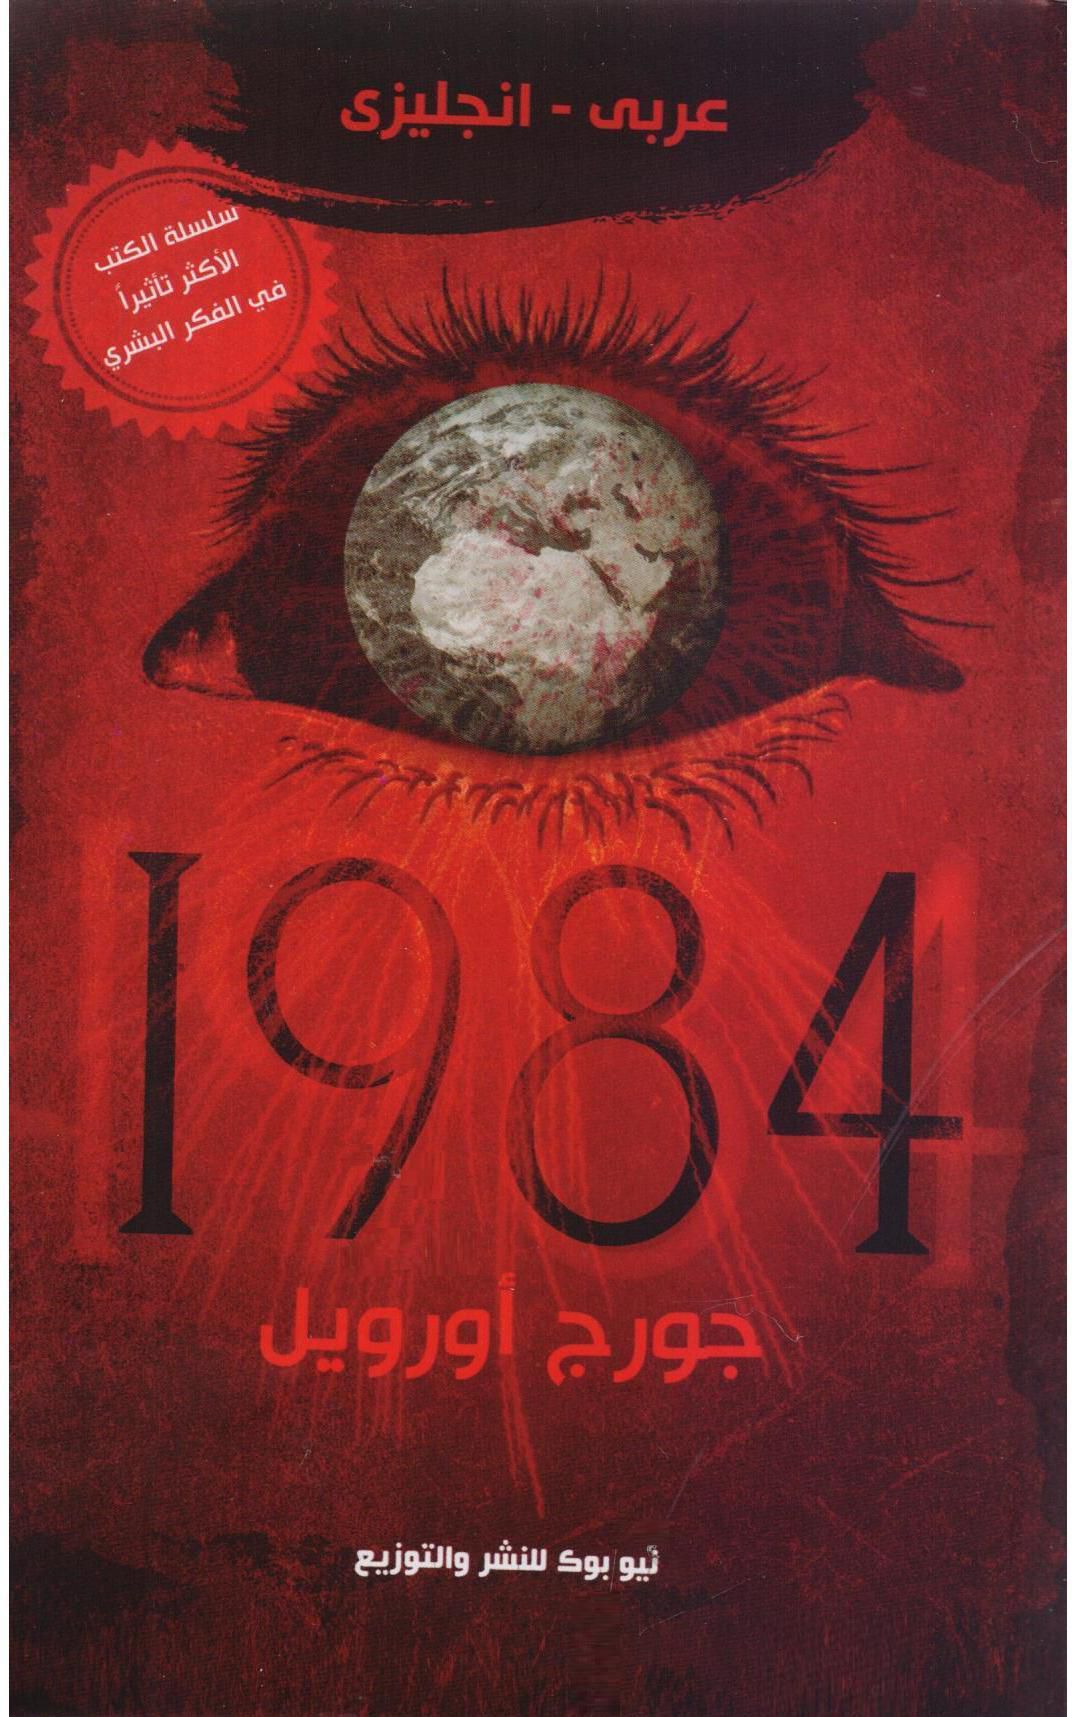 1984 عربي/انجليزي